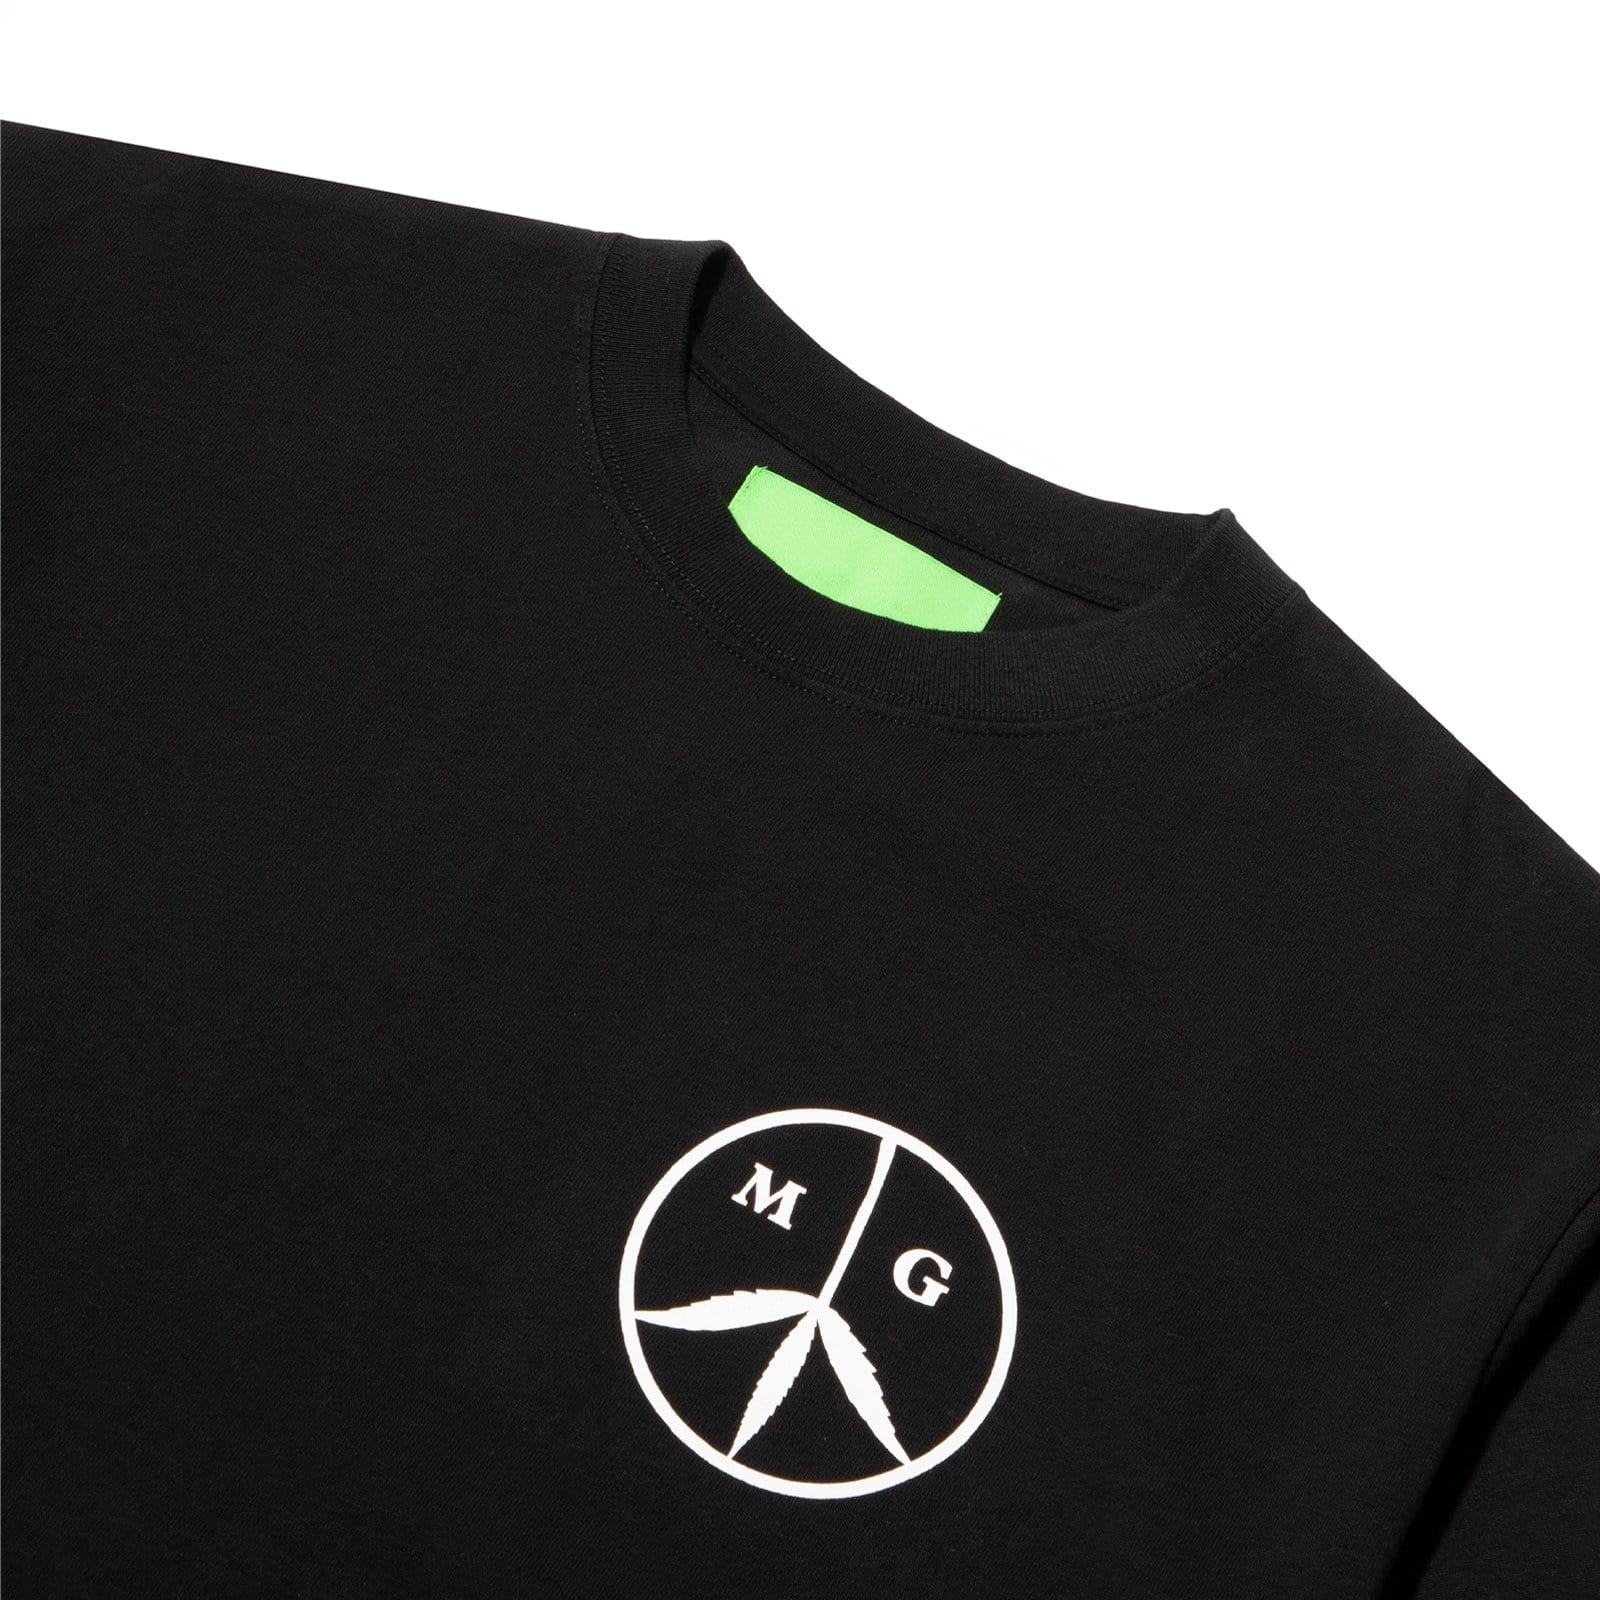 Mister Green T-Shirts PEACE/SUN LOGO TEE